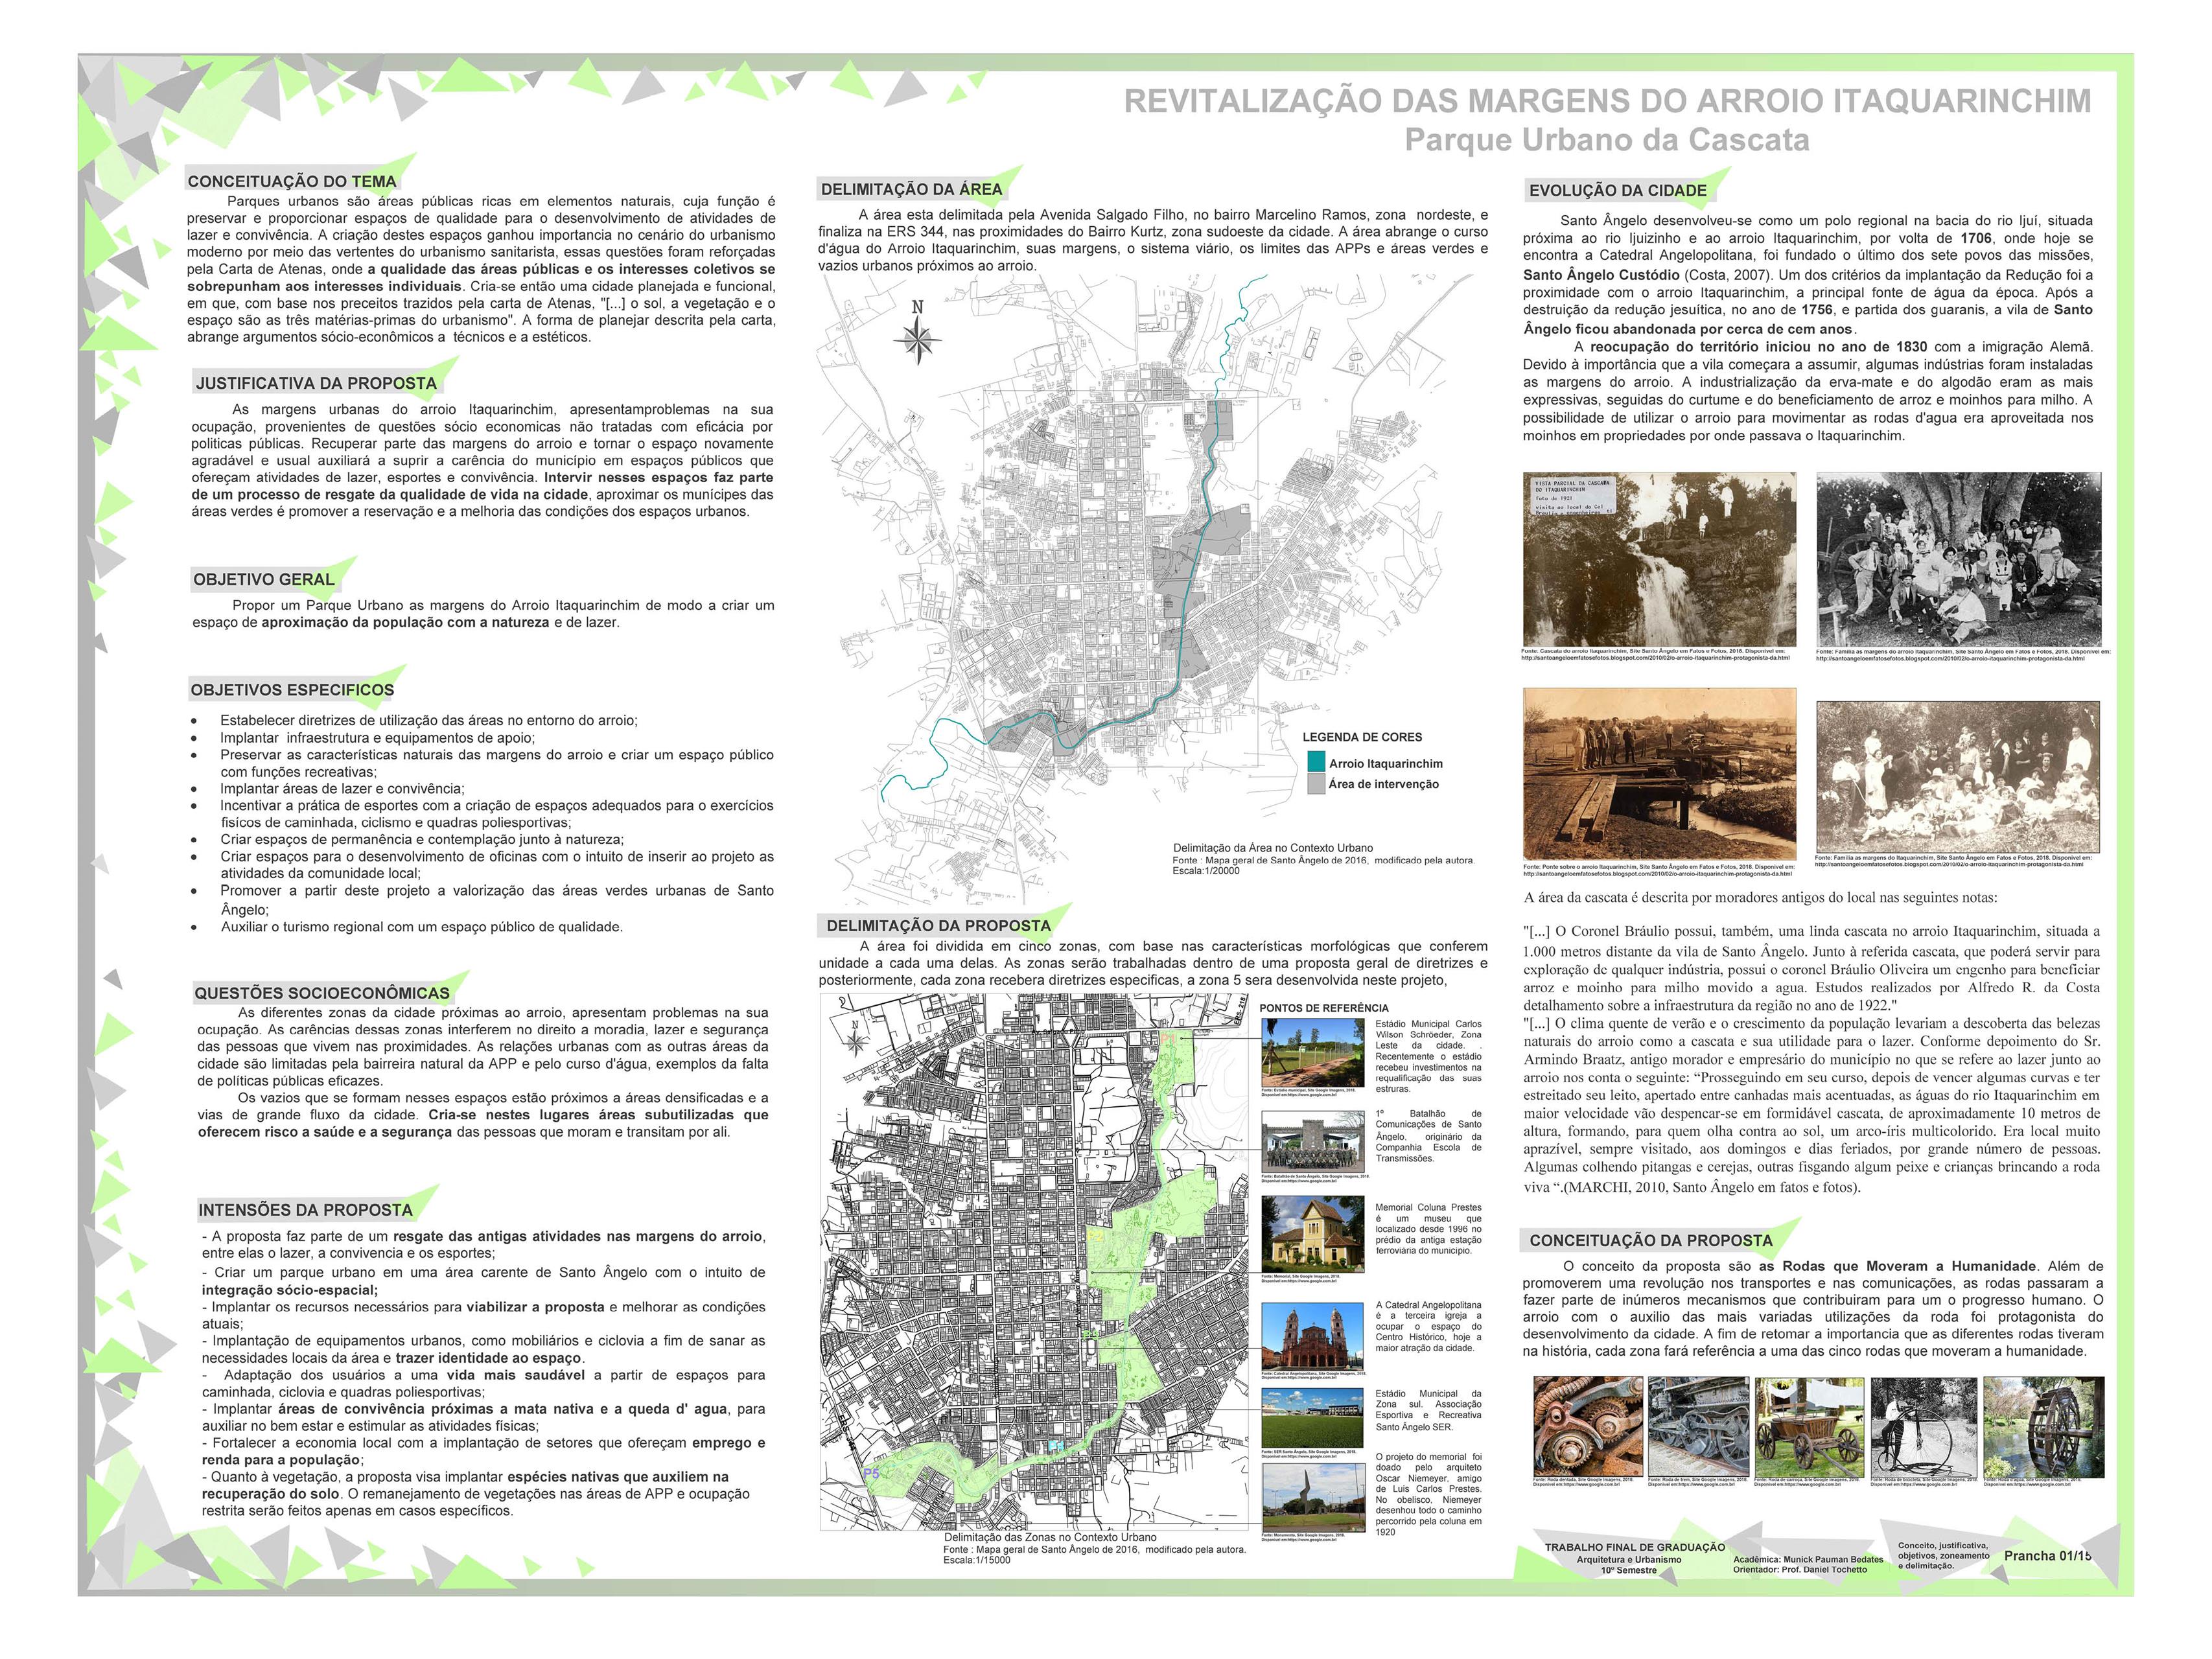 Revitalização das Margens do Arroio Itaquarinchim - Parque Urbano da Cascata (Copy)